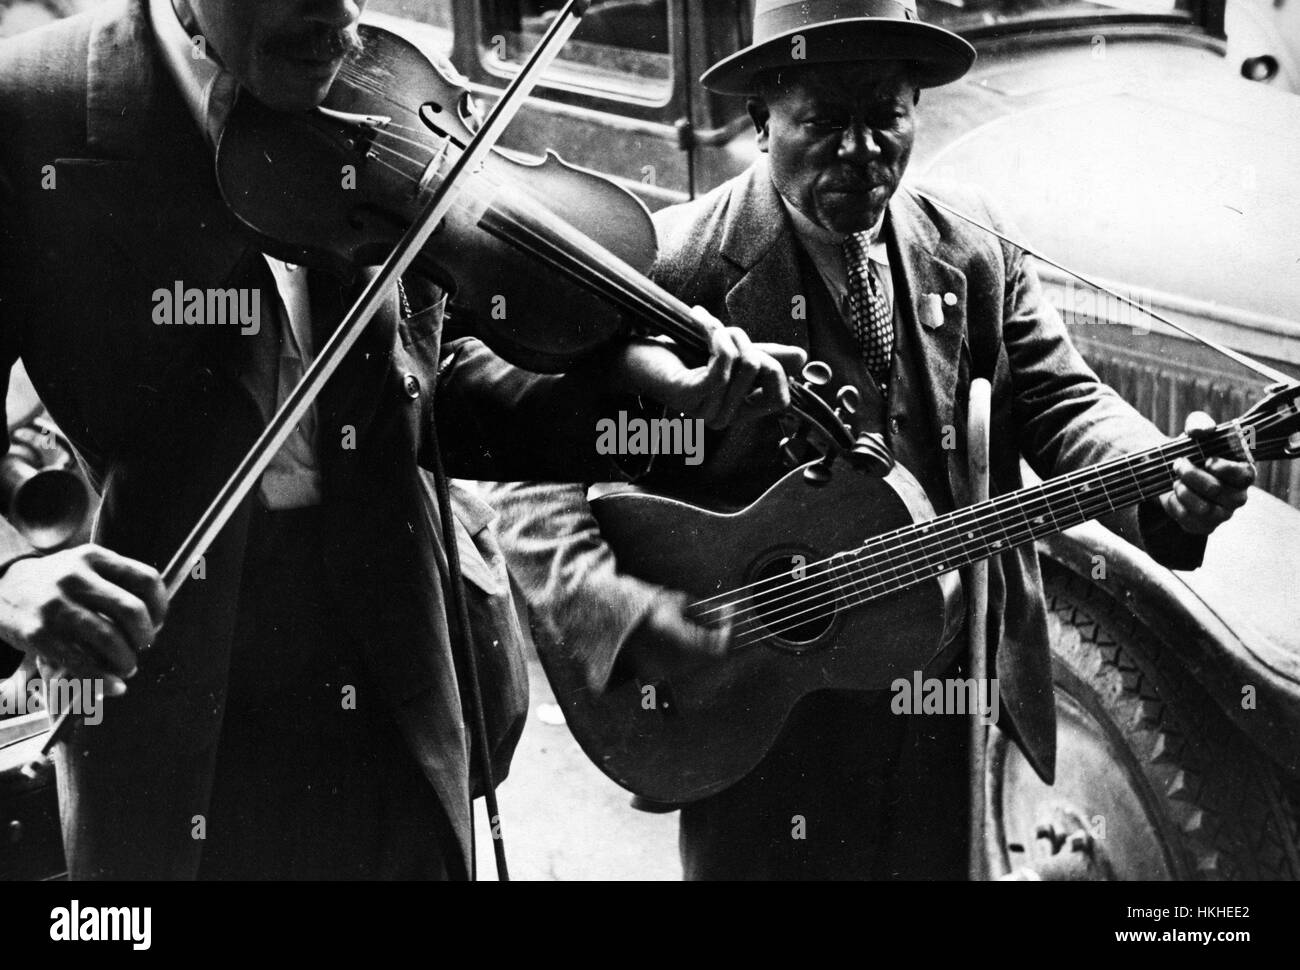 Schwarz / weiß Foto zwei afro-amerikanische Männer, Straßenmusikanten, eine Geige, die andere eine Gitarre von Walker Evans, US-amerikanischer Fotograf am besten bekannt für seine Arbeit für die Farm Security Administration dokumentieren die Auswirkungen der Weltwirtschaftskrise, Westmemphis, Arkansas, 1935. Von der New York Public Library. Stockfoto